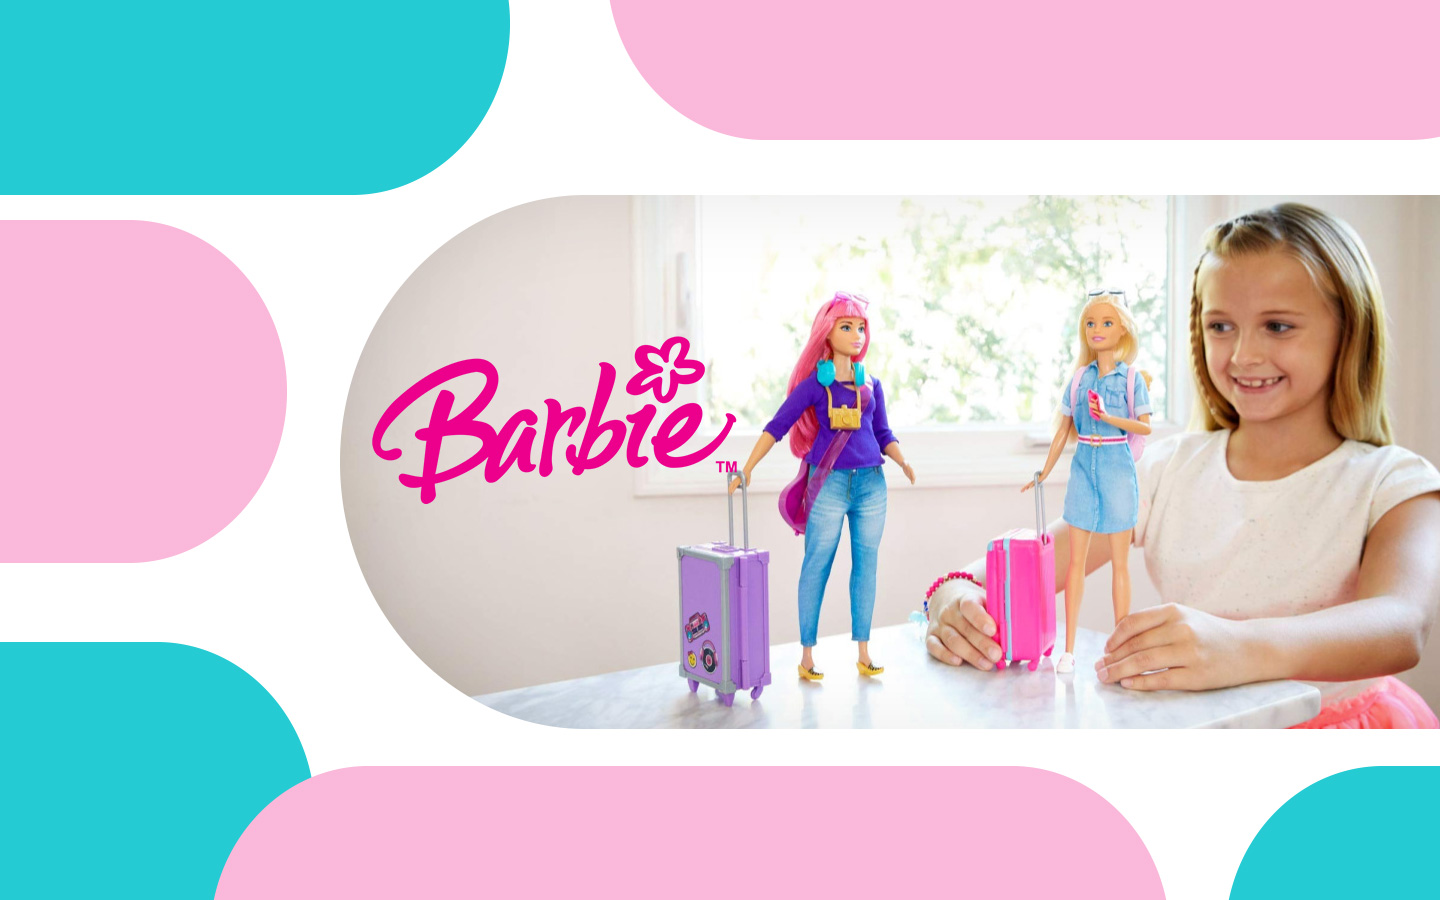 Barbie - Boneca Totally Hair com conjunto de jogo e cabeleireiro